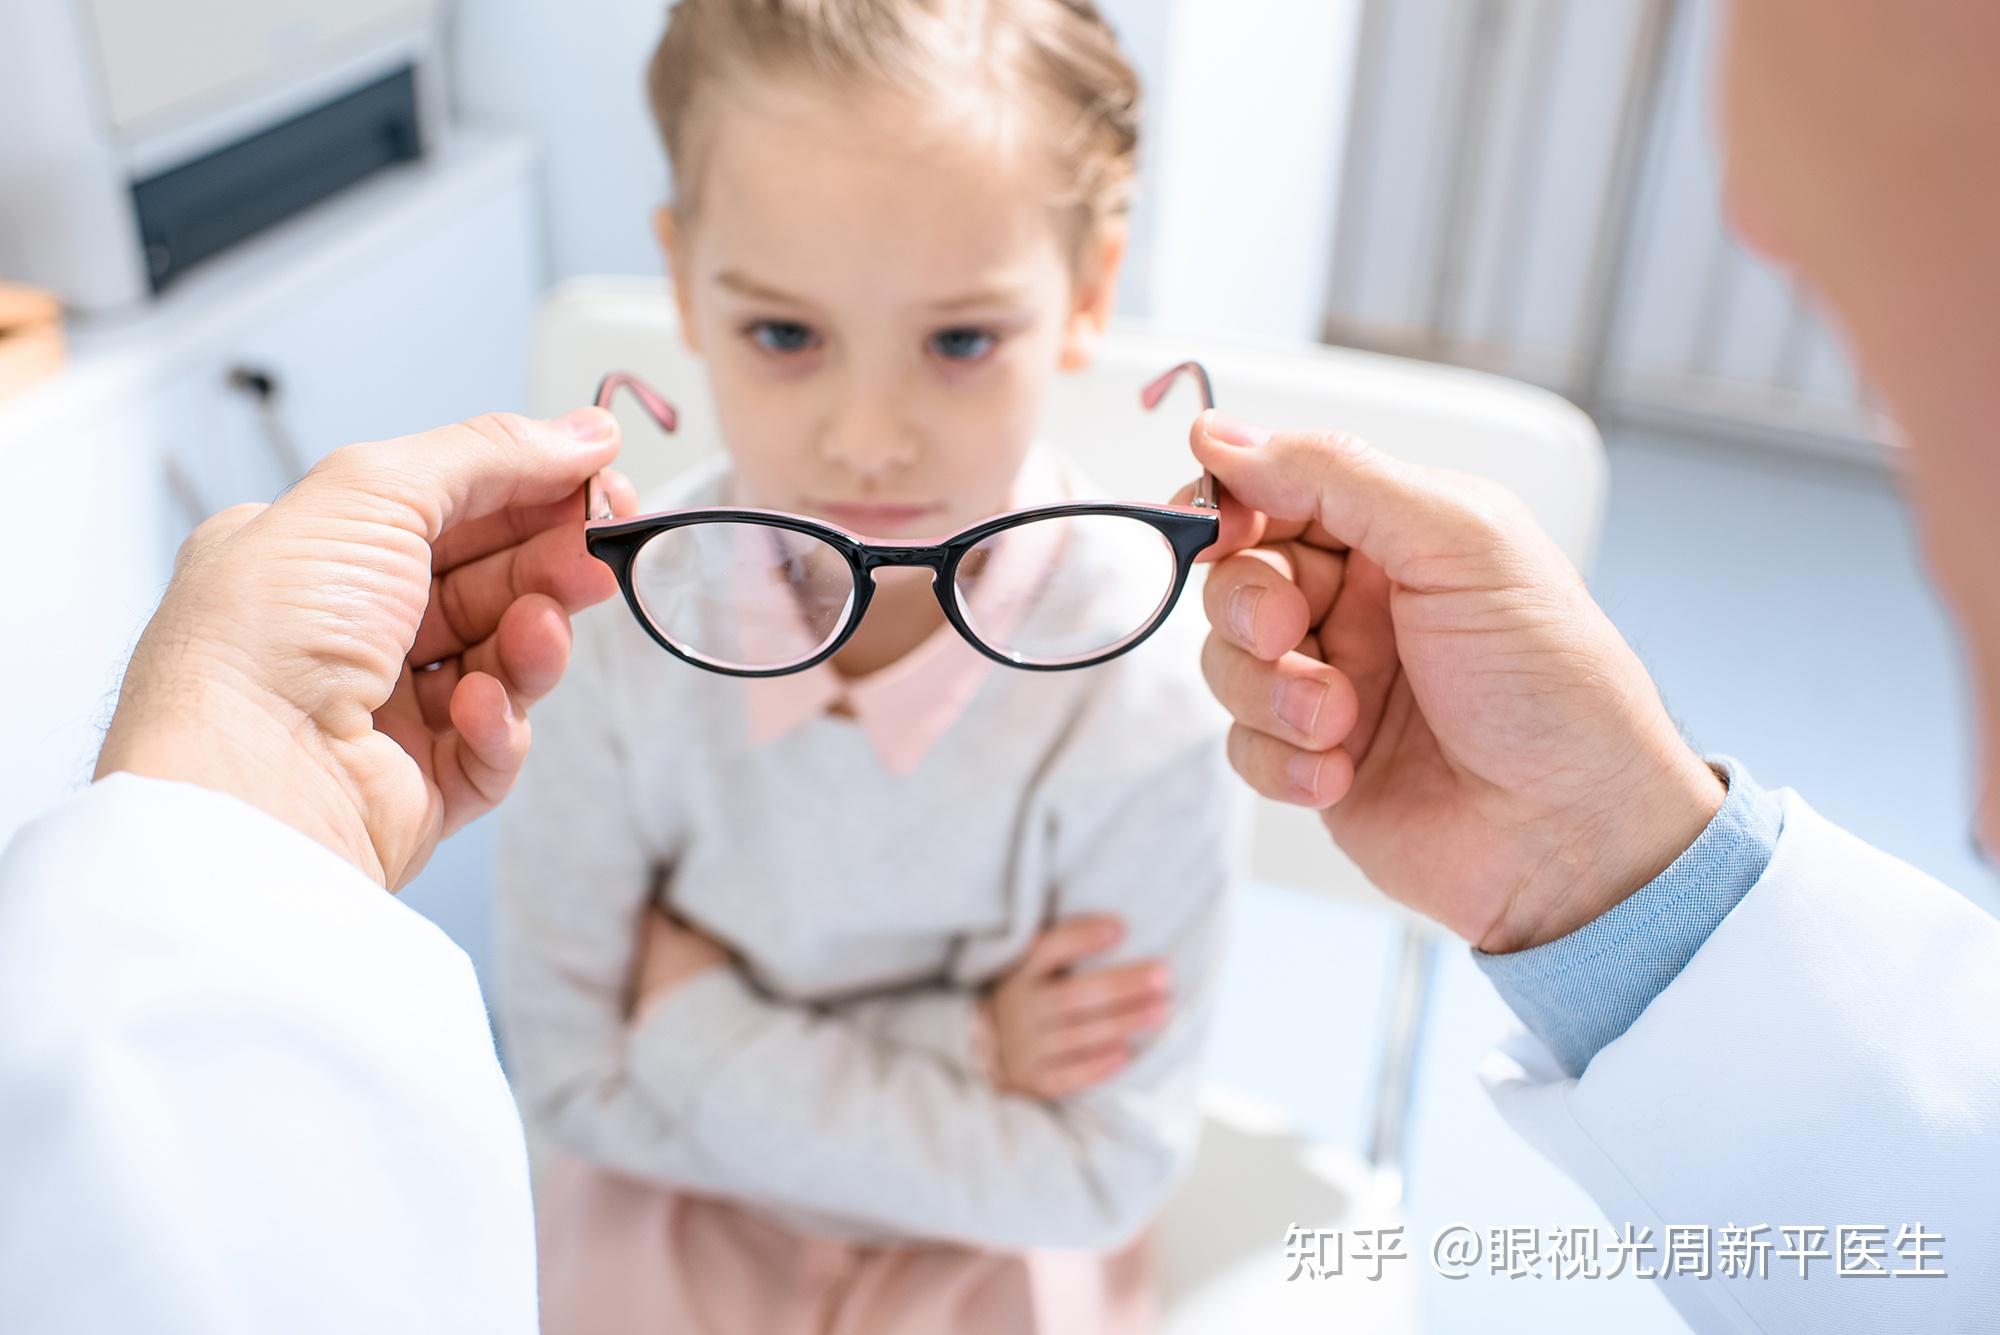 孩子近视已经600度了,还能戴角膜塑形镜吗?